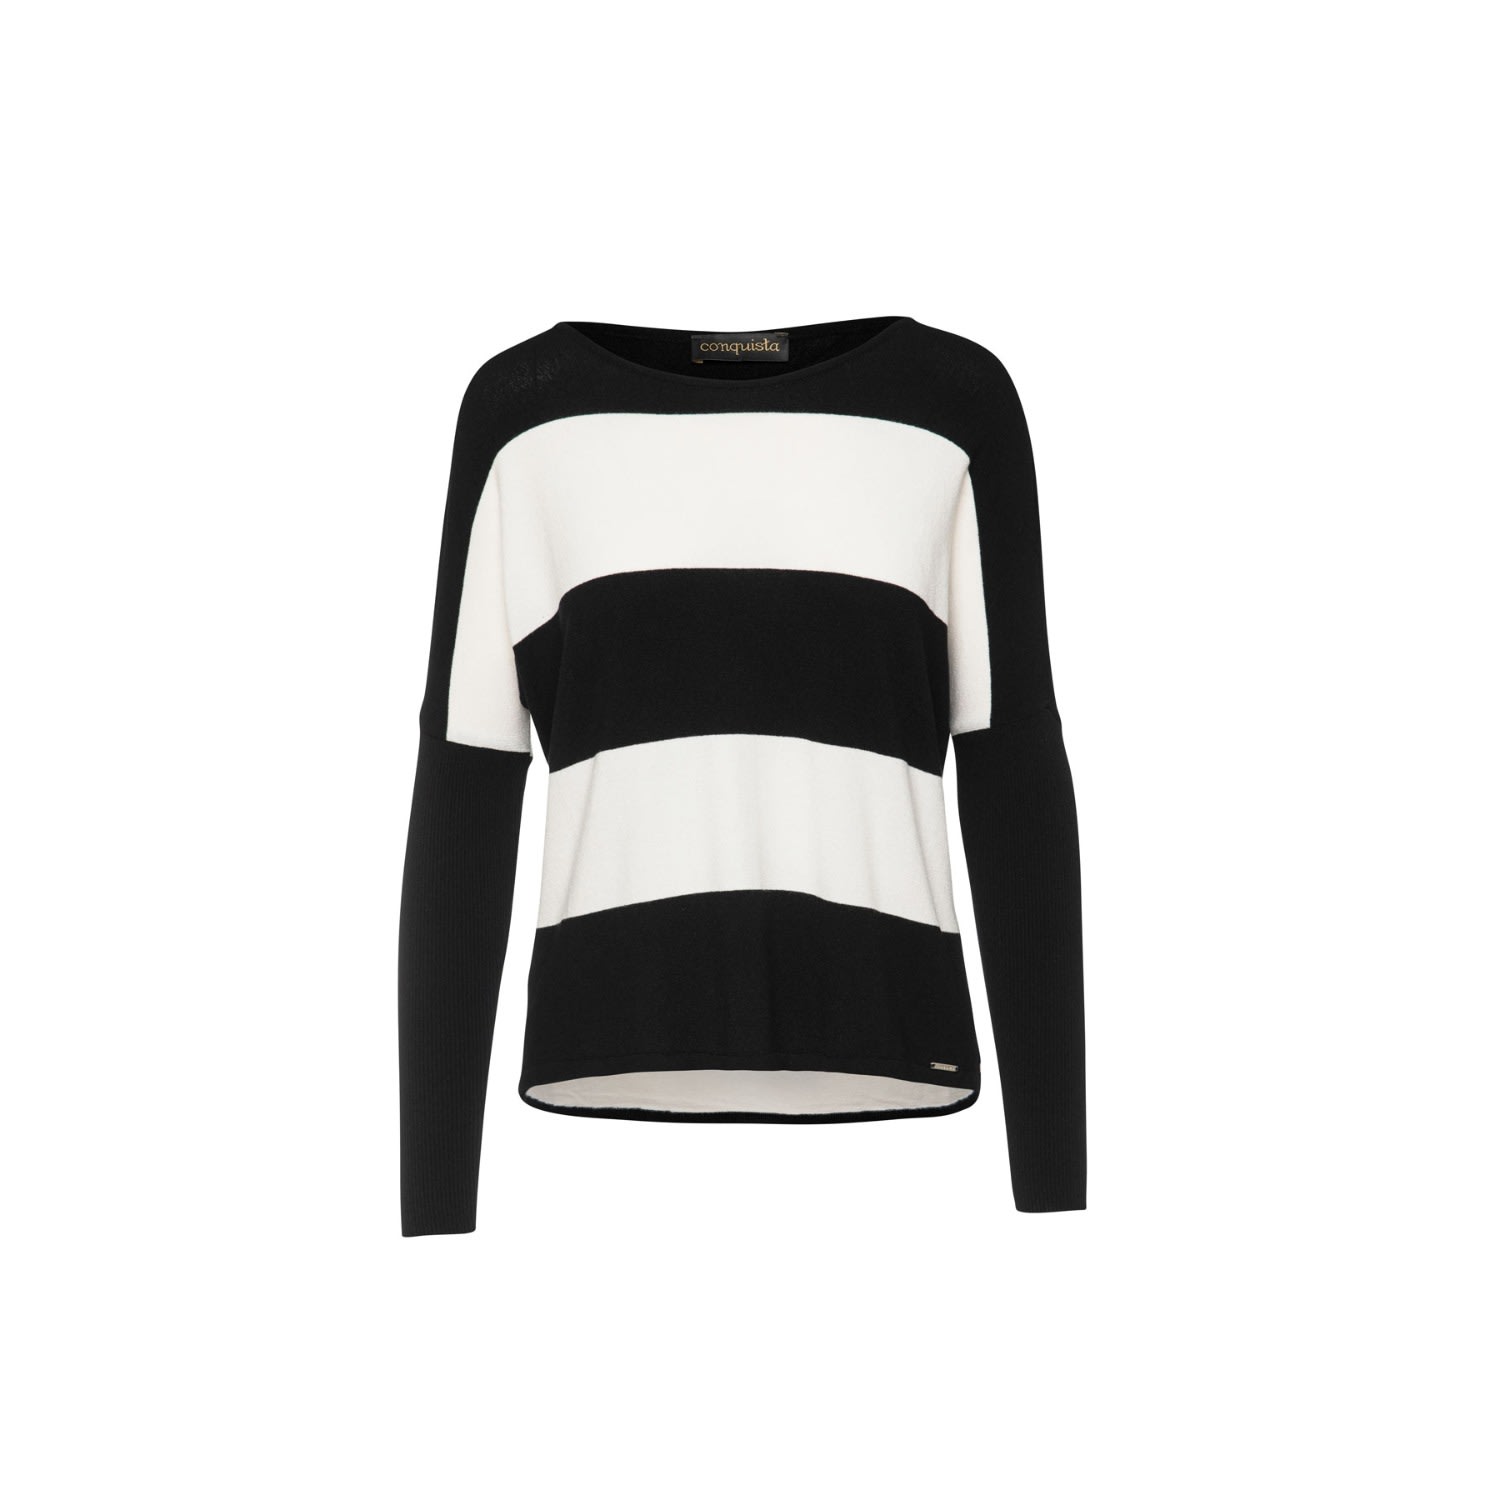 Women’s Black & White Striped Sweater Small Conquista